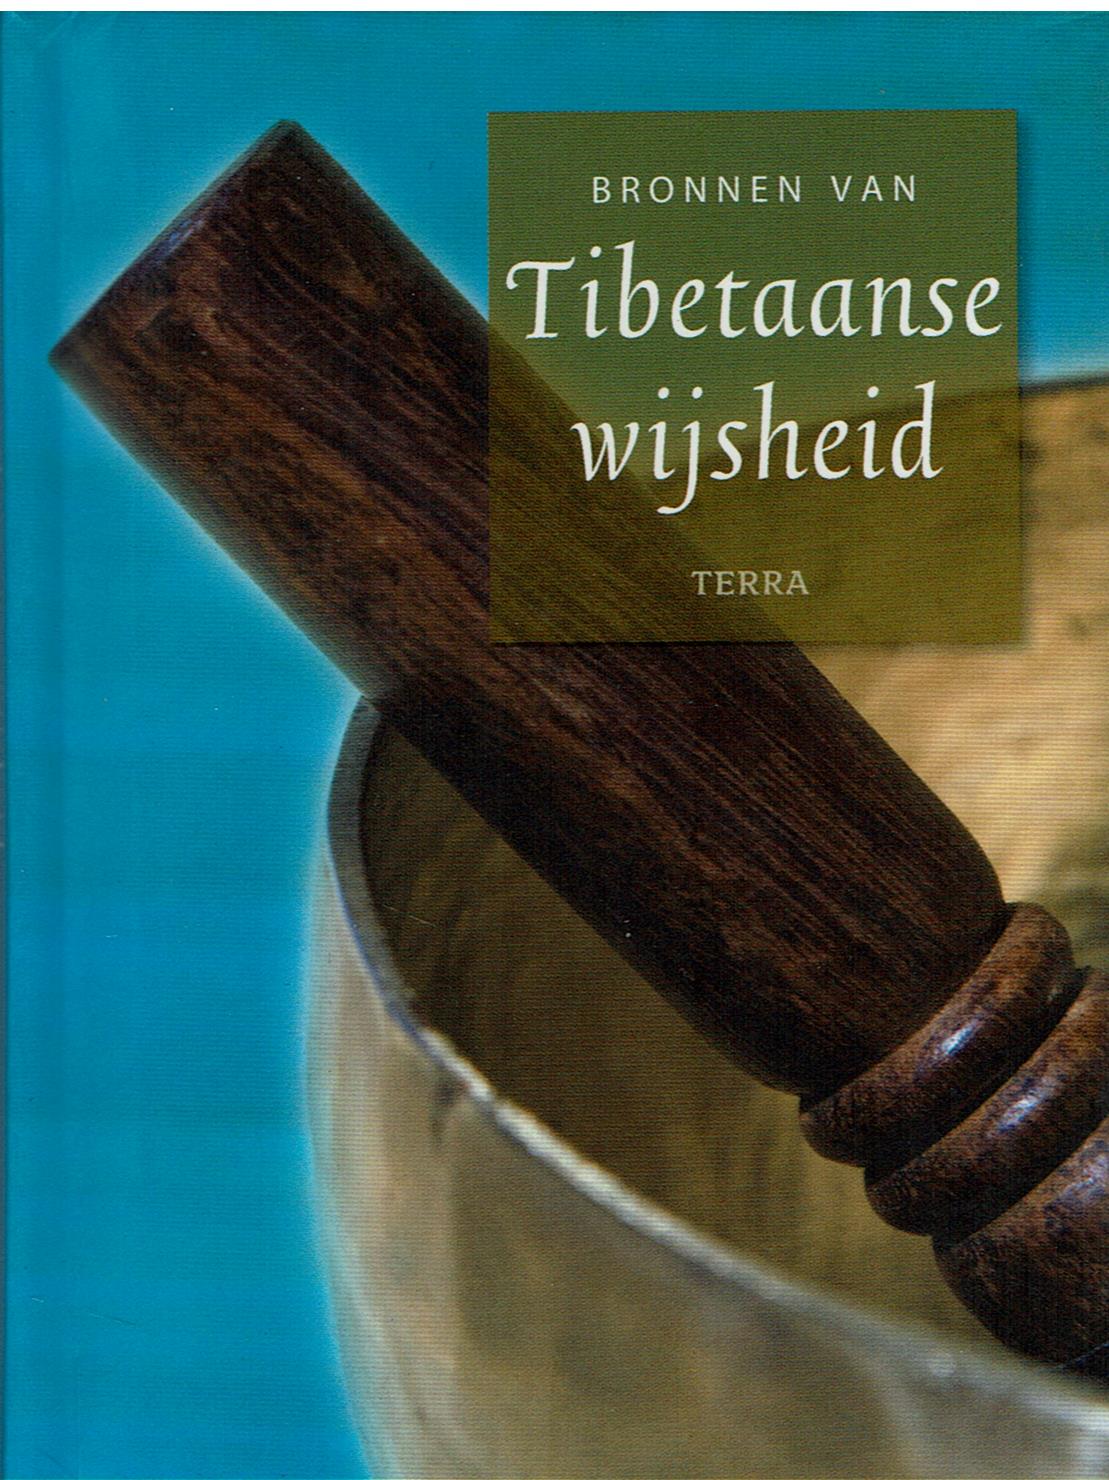 Bronnen van Tibetaanse wijsheid - Voorkant